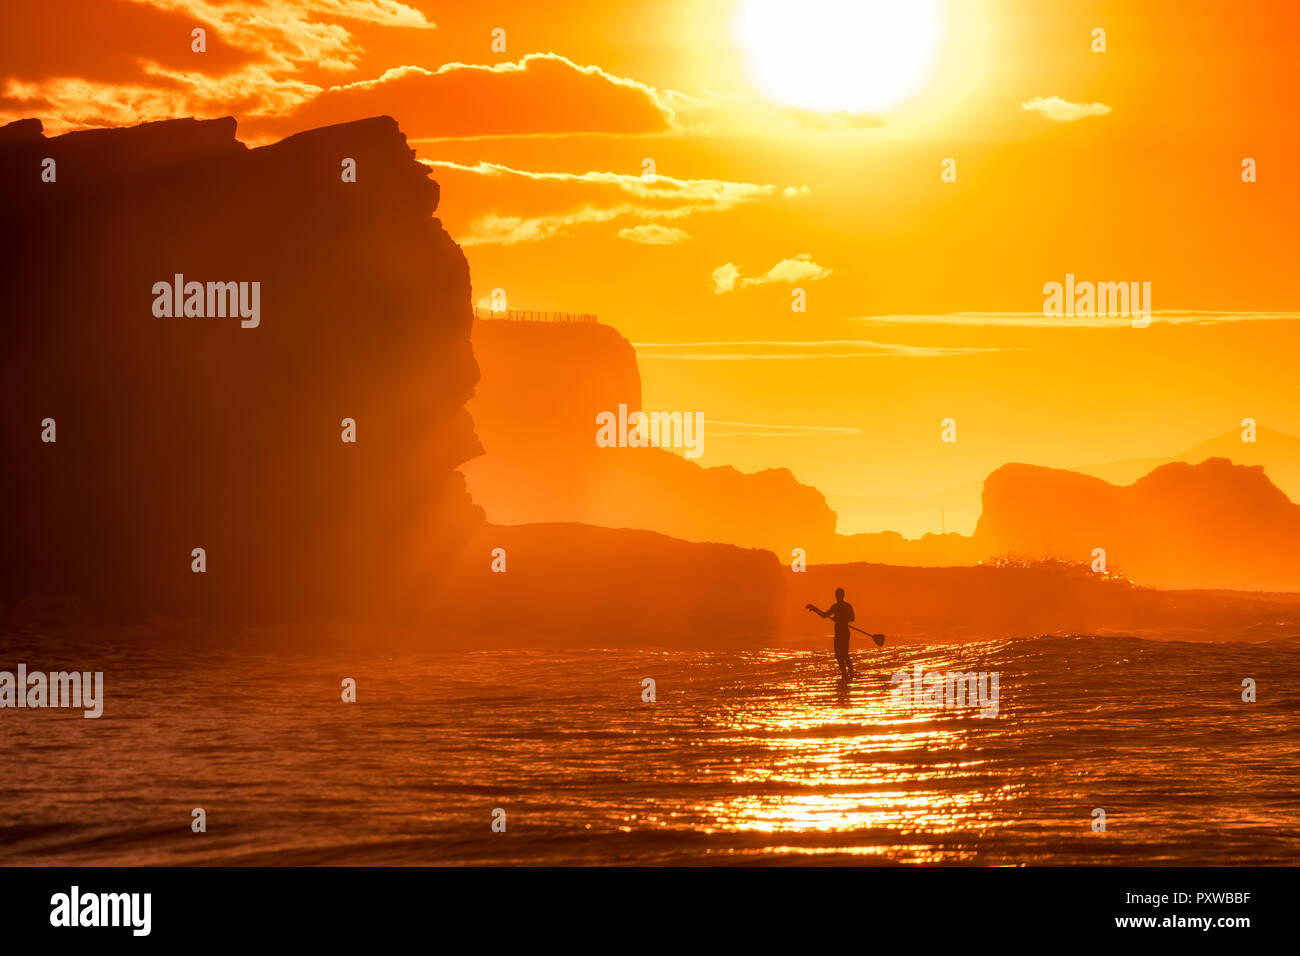 Großbritannien, Schottland, East Lothian, Wasser Sport, Paddle Board surfen, Sonnenuntergang Stockfoto